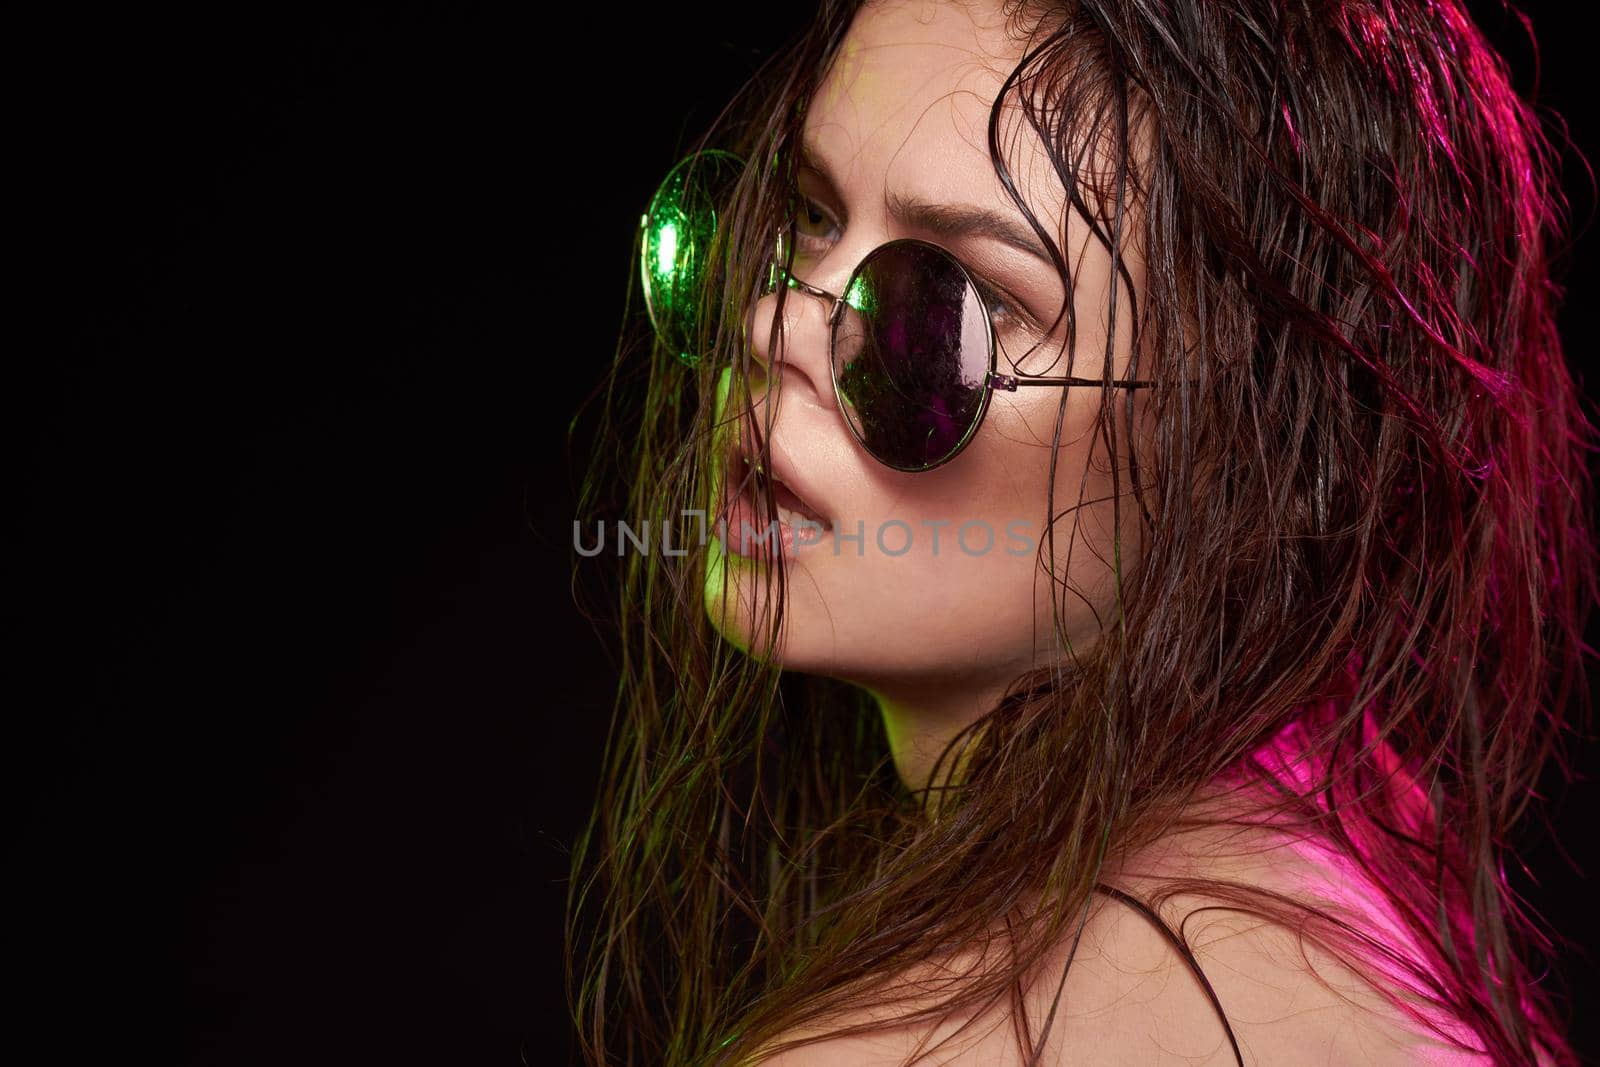 woman model wearing sunglasses posing luxury close-up by Vichizh